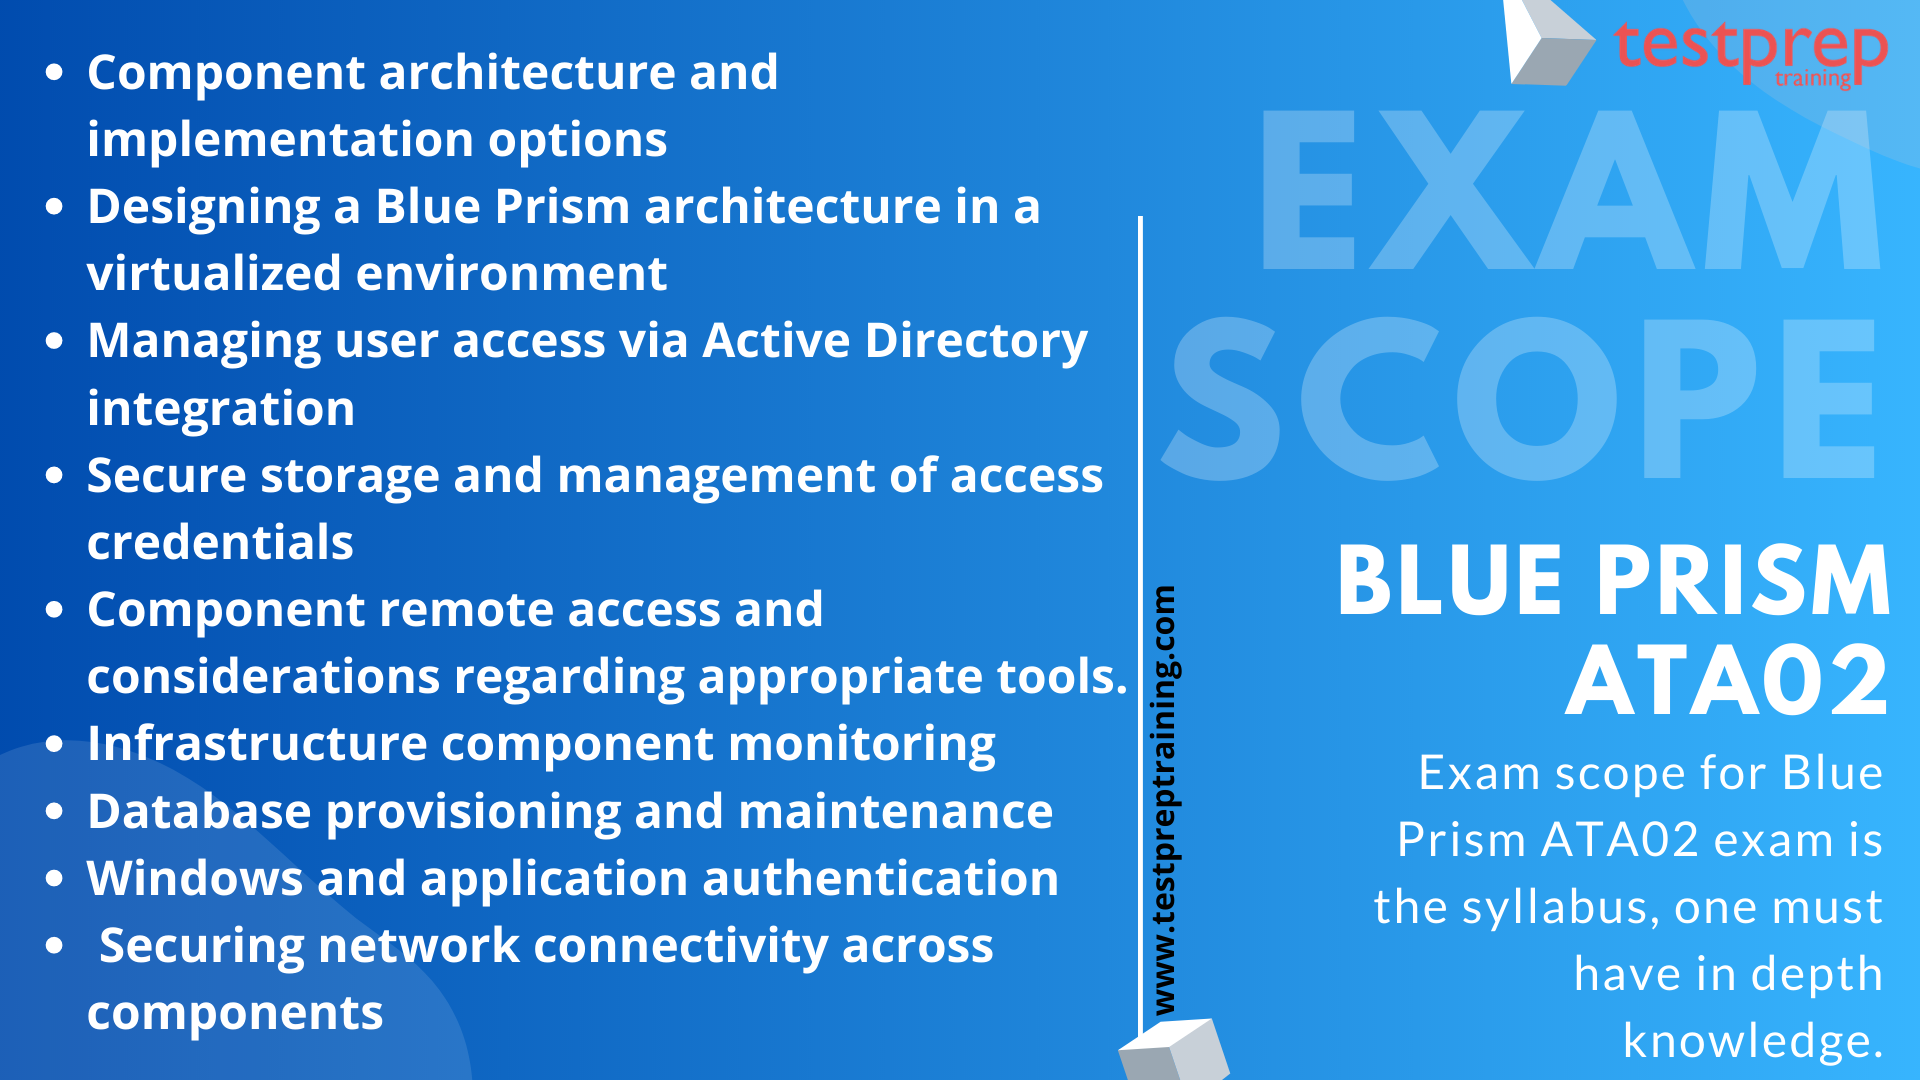 ATA02 Designing a Blue Prism (Version 6.0) exam scope